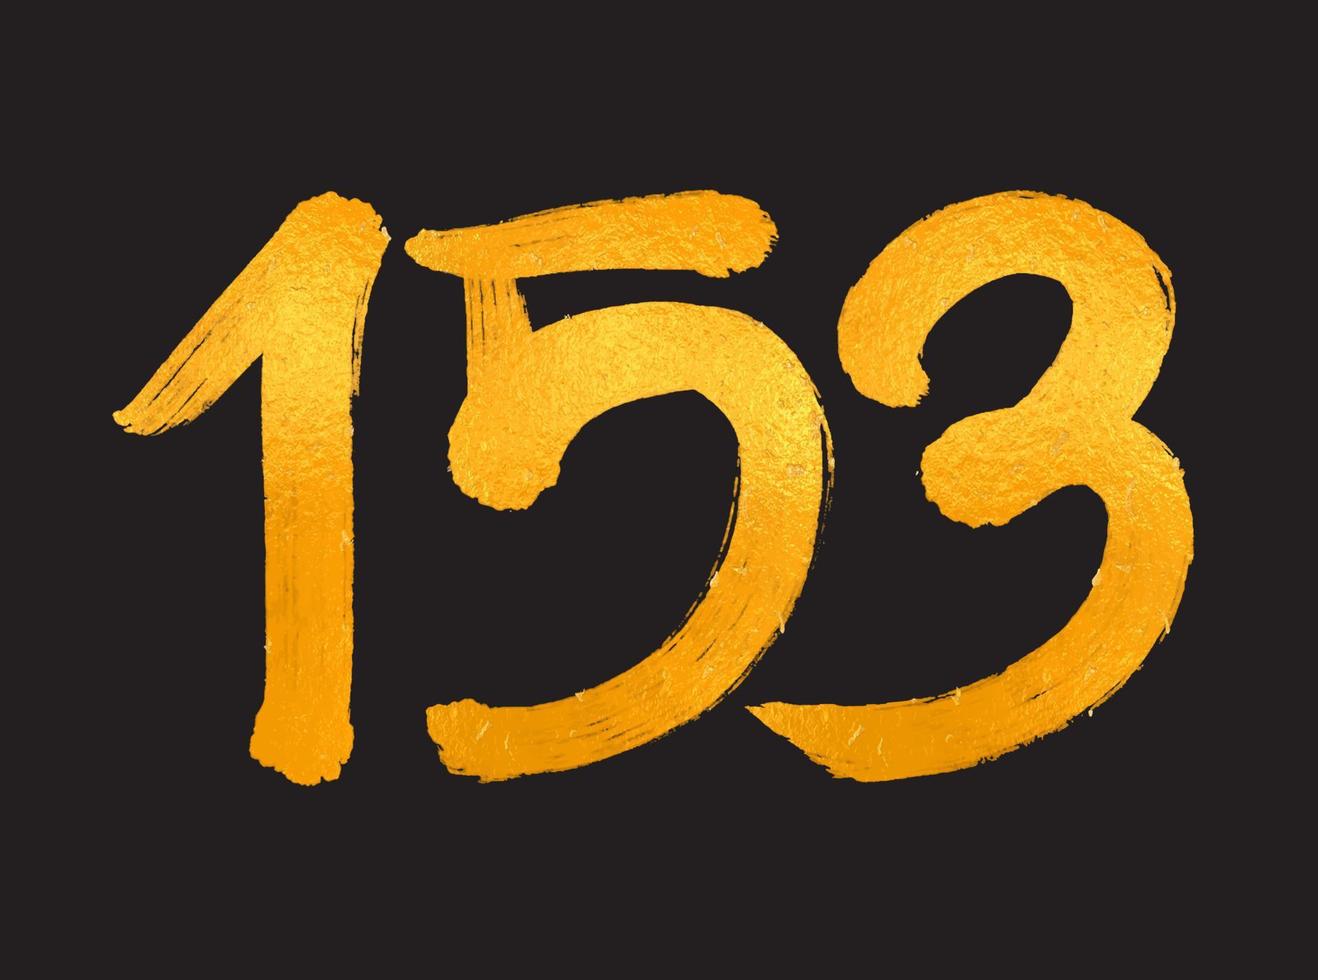 153 numero logo vettore illustrazione, 153 anni anniversario celebrazione vettore modello, 153° compleanno, oro lettering numeri spazzola disegno mano disegnato schizzo, numero logo design per Stampa, t camicia